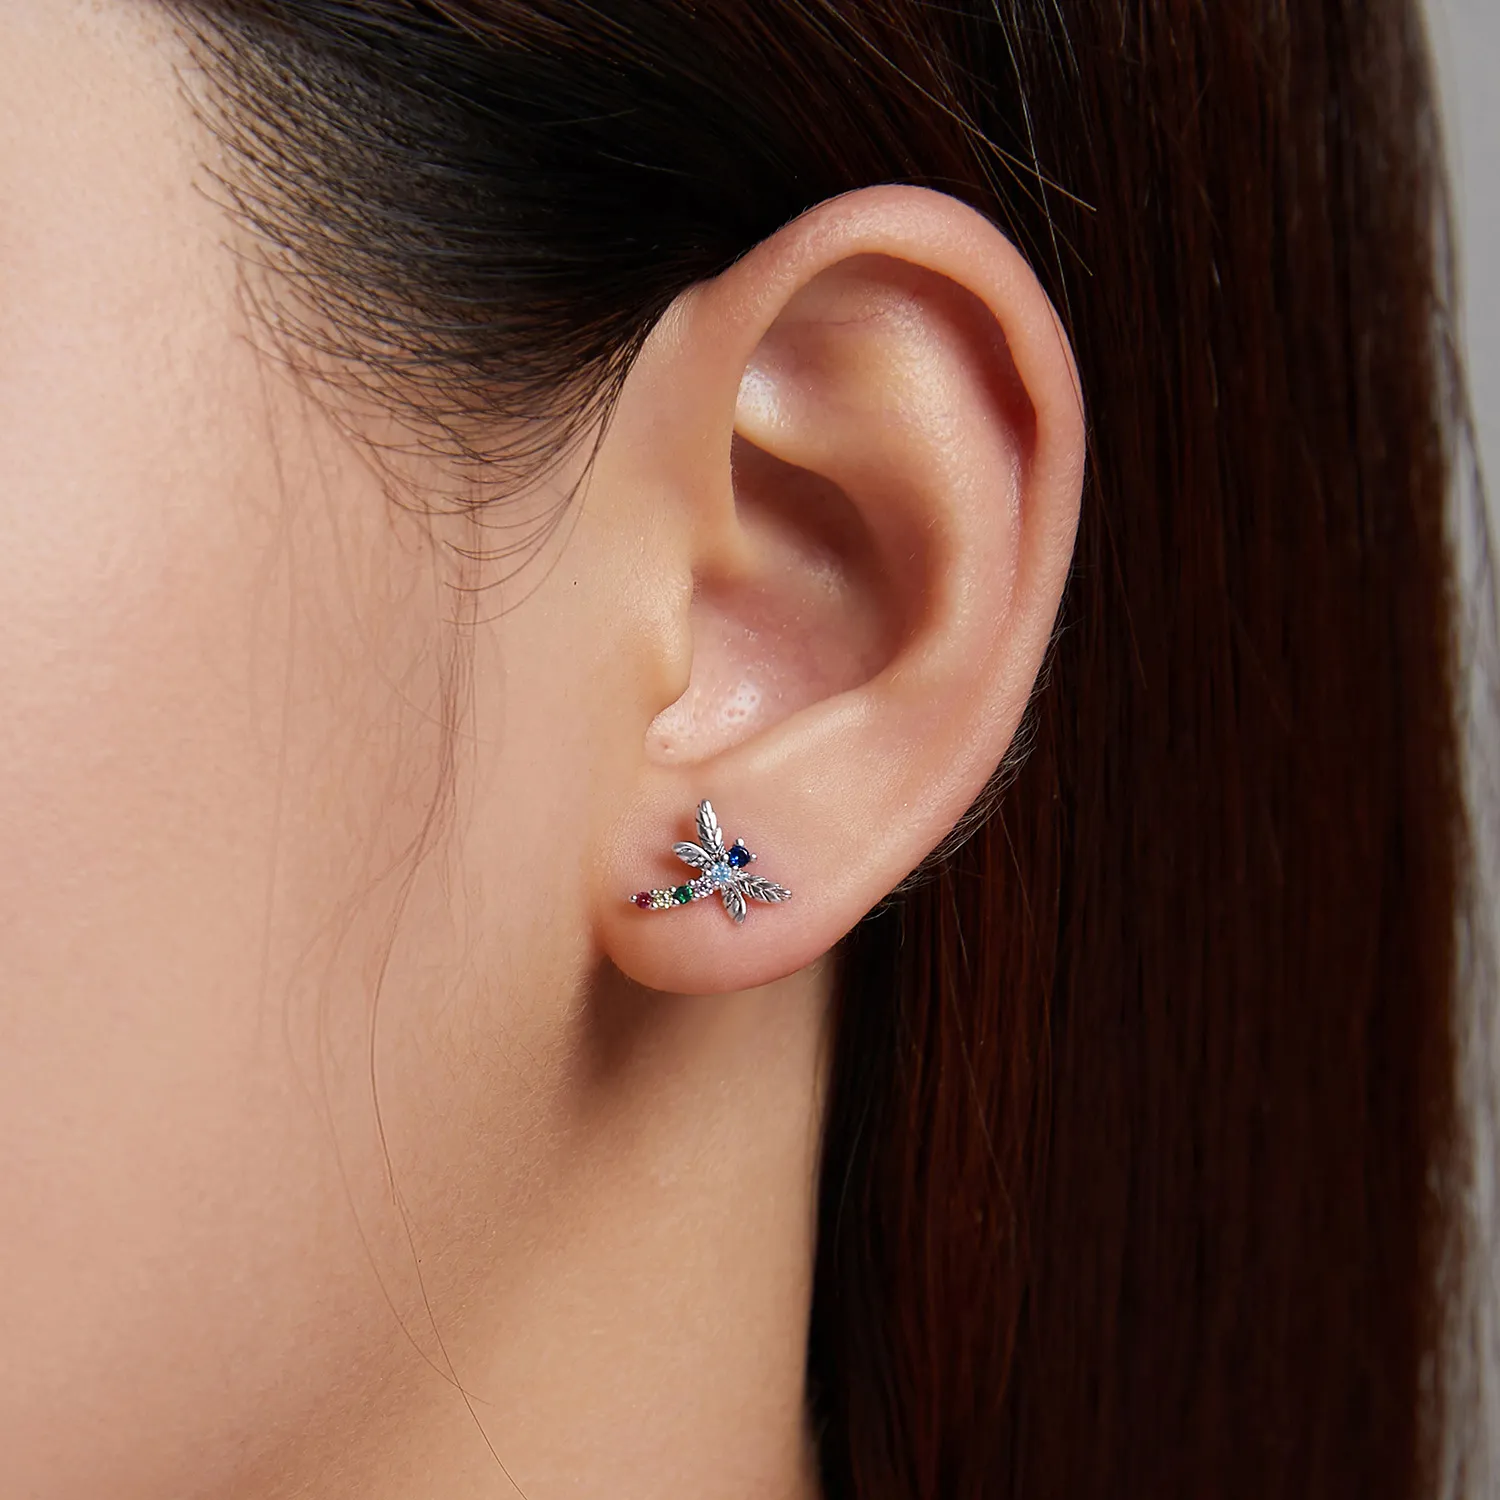 Studuri de urechi cu dragonfly colorat în stilul Pandora - BSE515